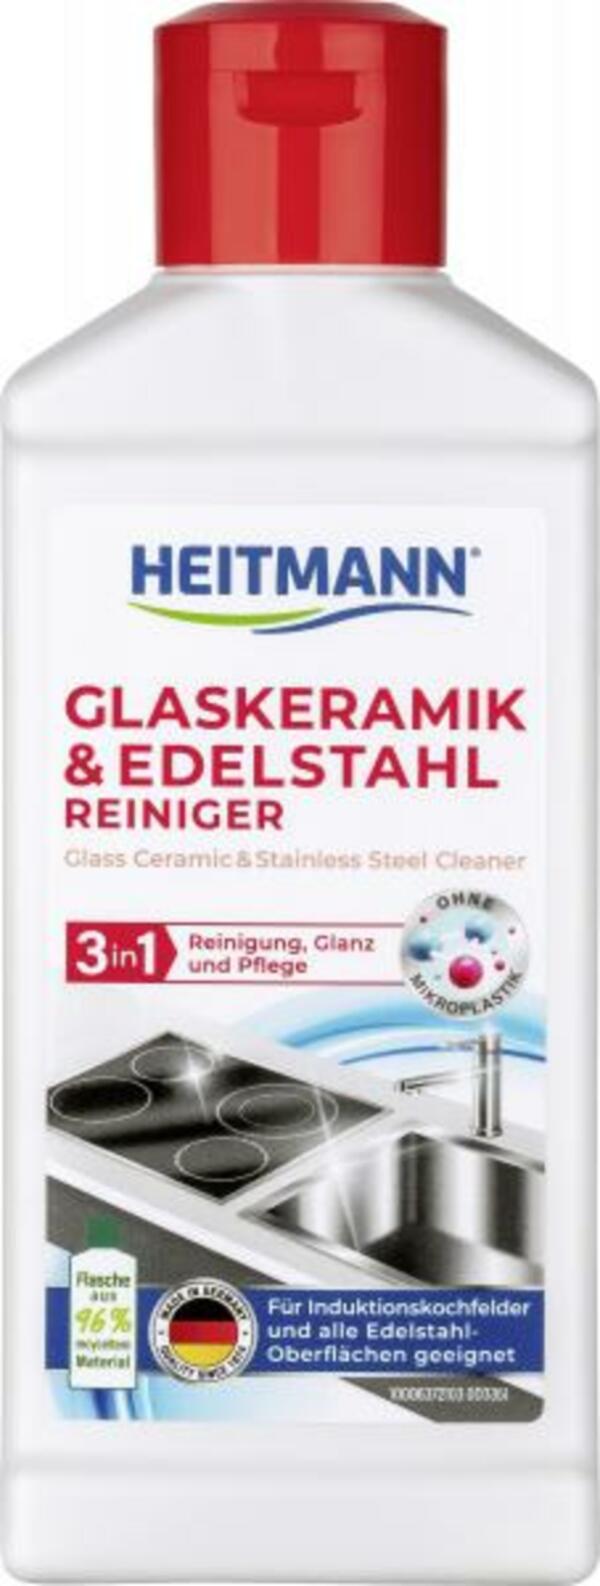 Bild 1 von Heitmann Glaskeramik und Edelstahl Reiniger 3in1